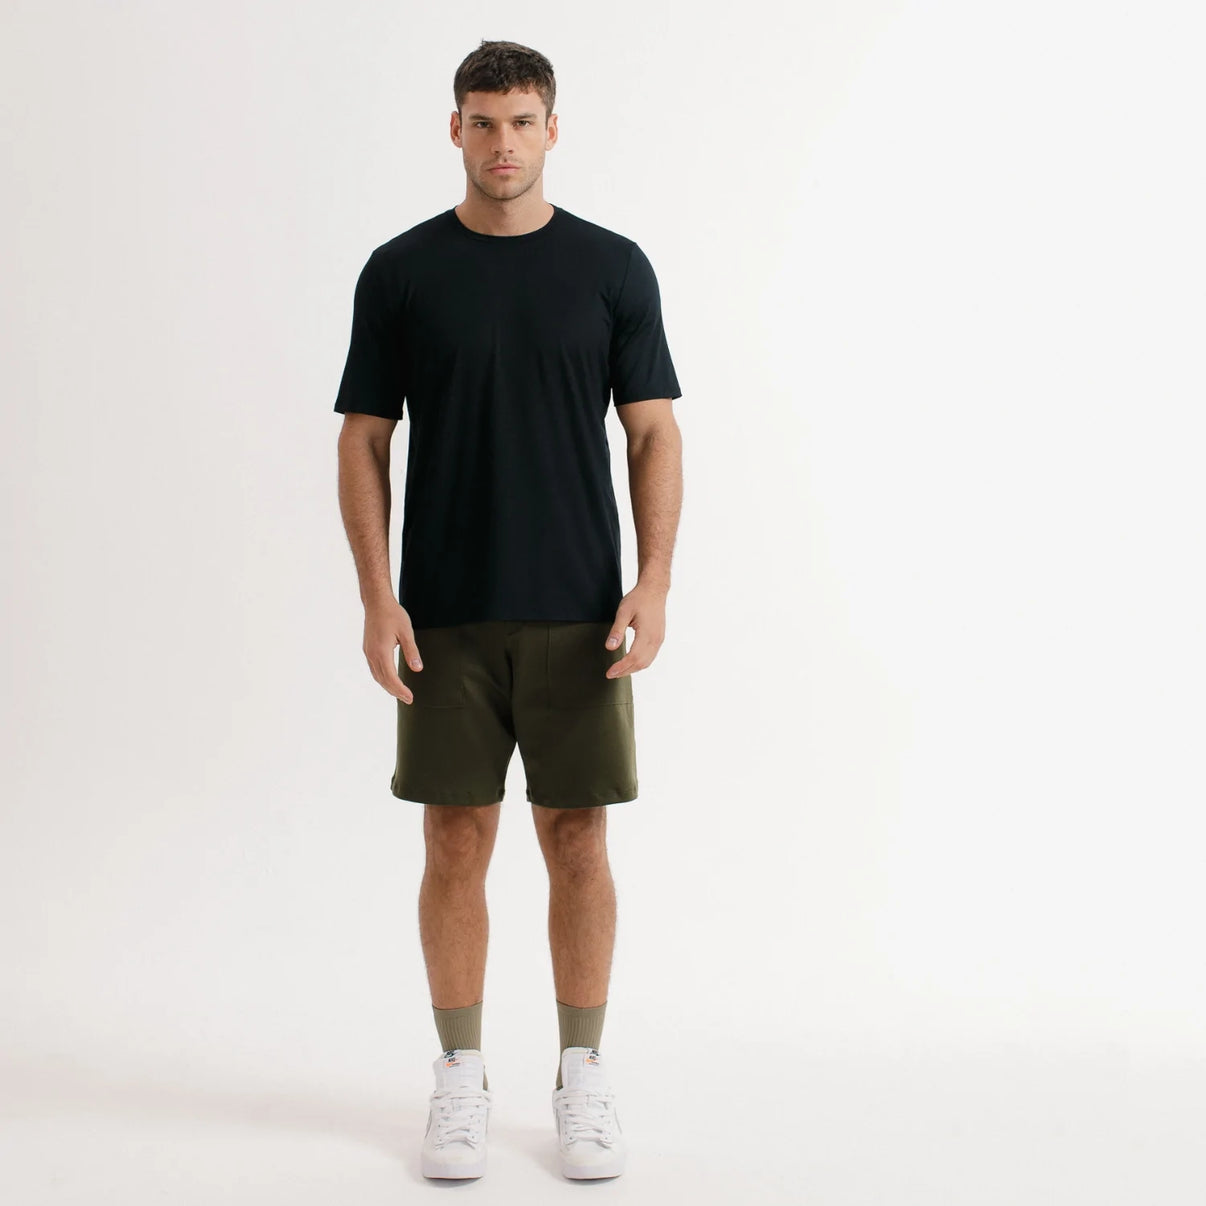 Everyday Shorts: bermuda casual, confortável e tecnológica